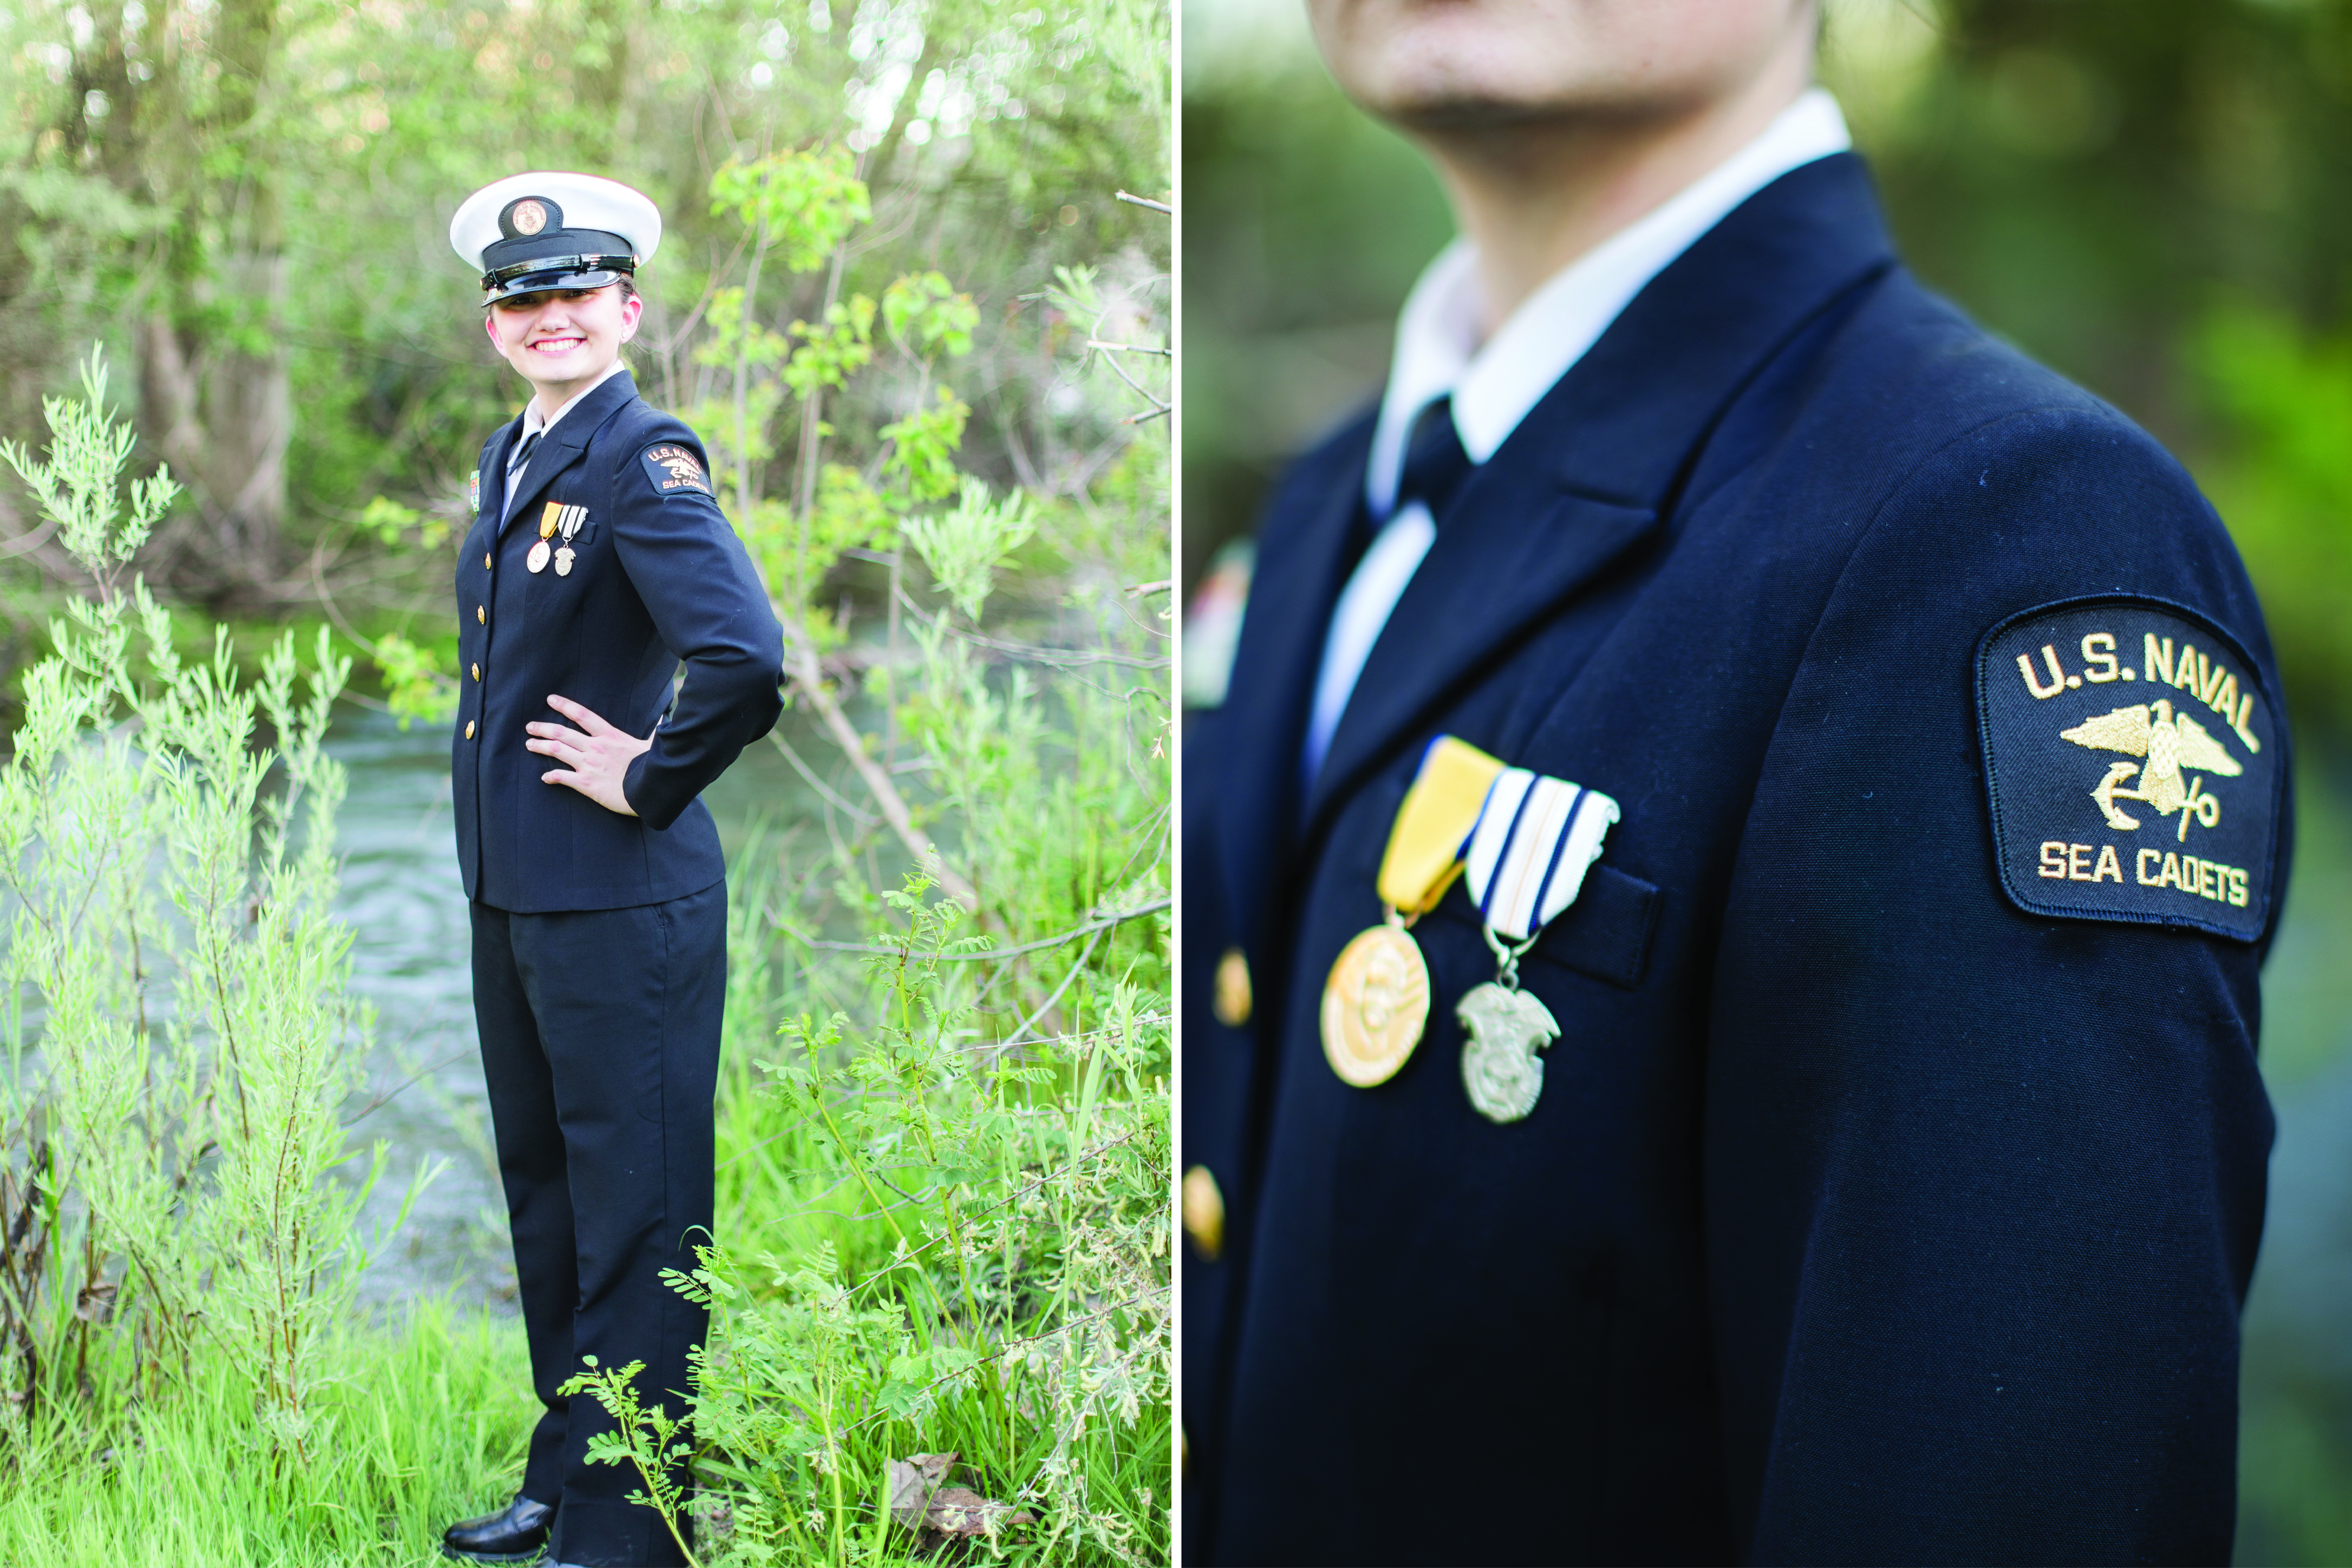 Navy Sea Cadet Girl